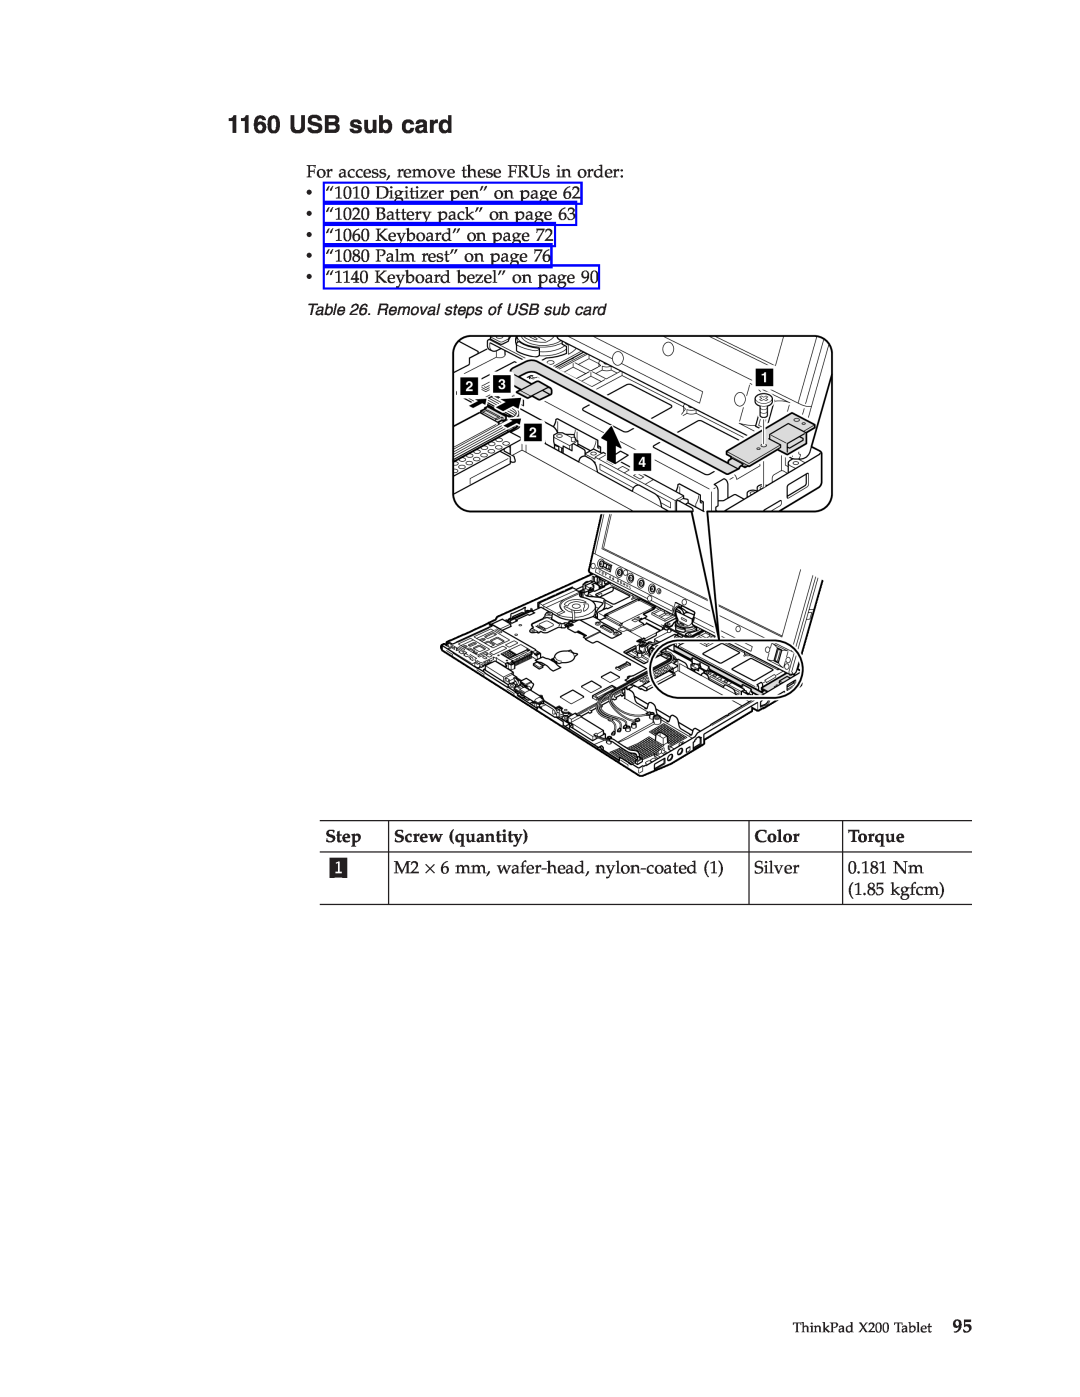 Lenovo X200 manual USB sub card, Step, Screw quantity, Color, Torque 